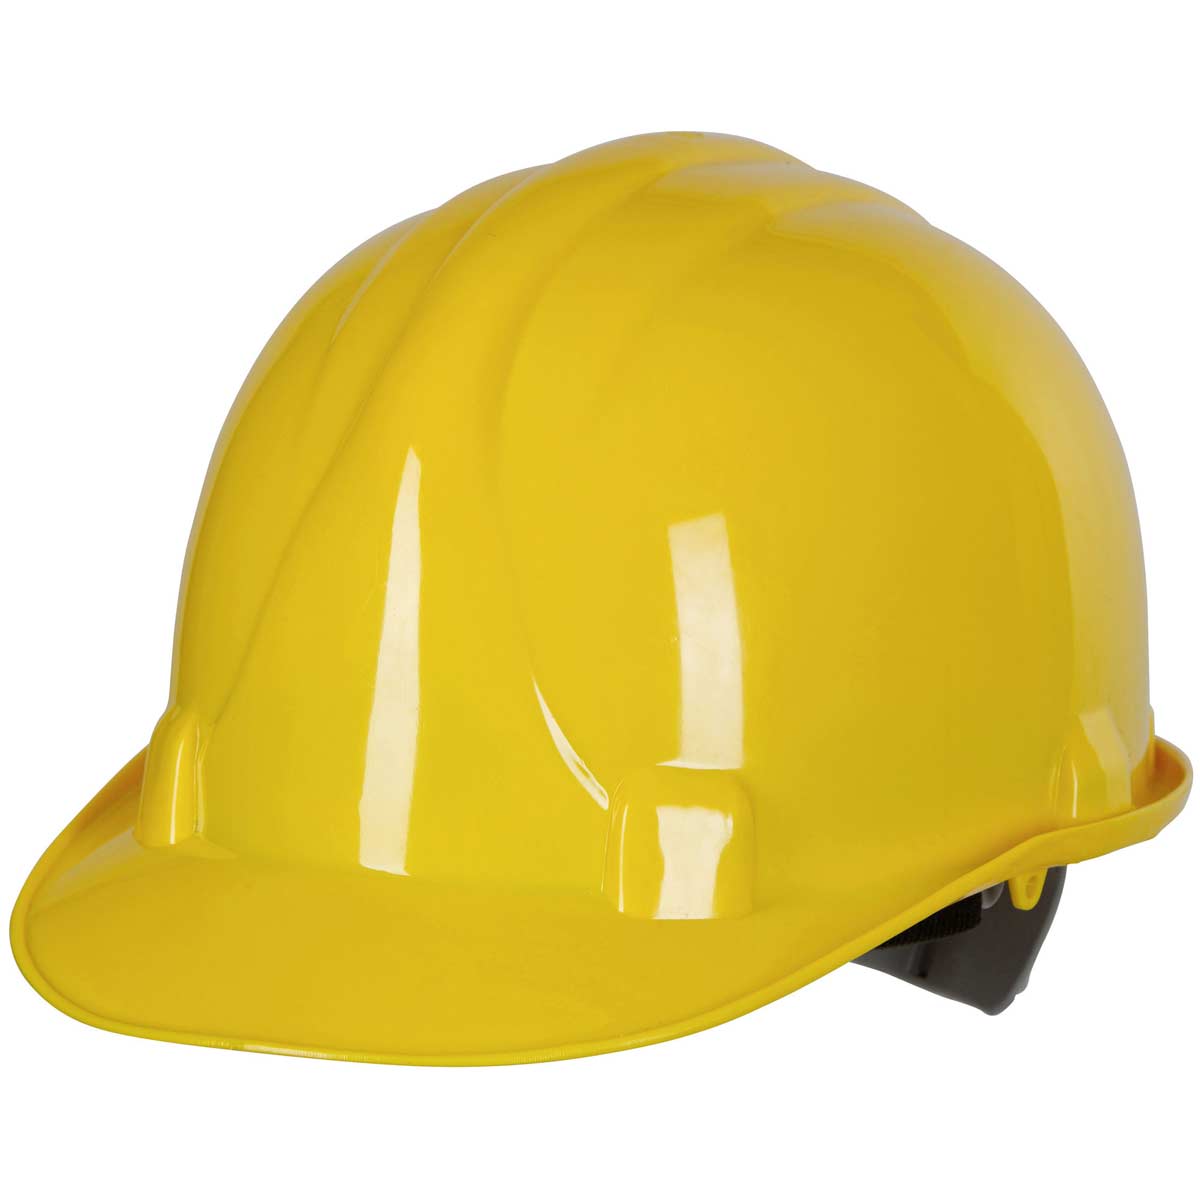 Arbeits-Schutzhelm gelb